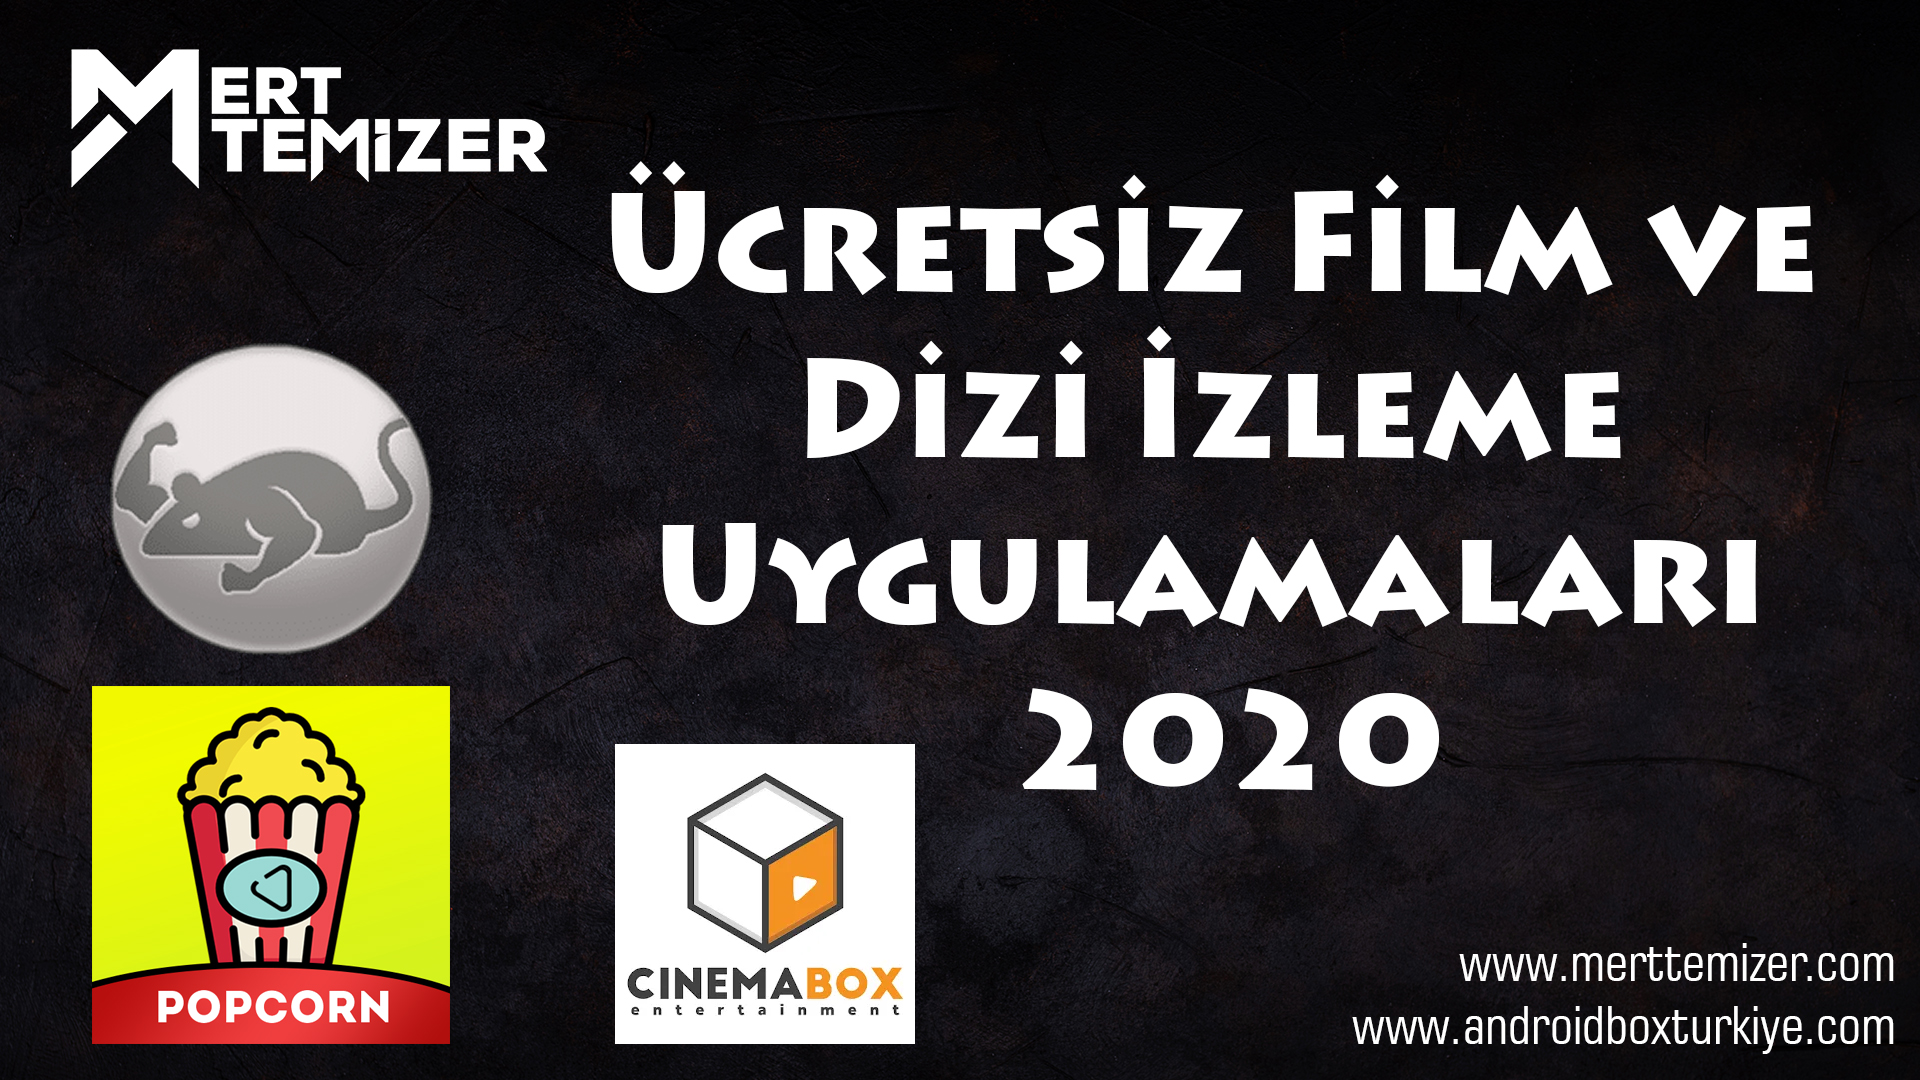 Ücretsiz Film ve Dizi İzleme Uygulamaları 2020